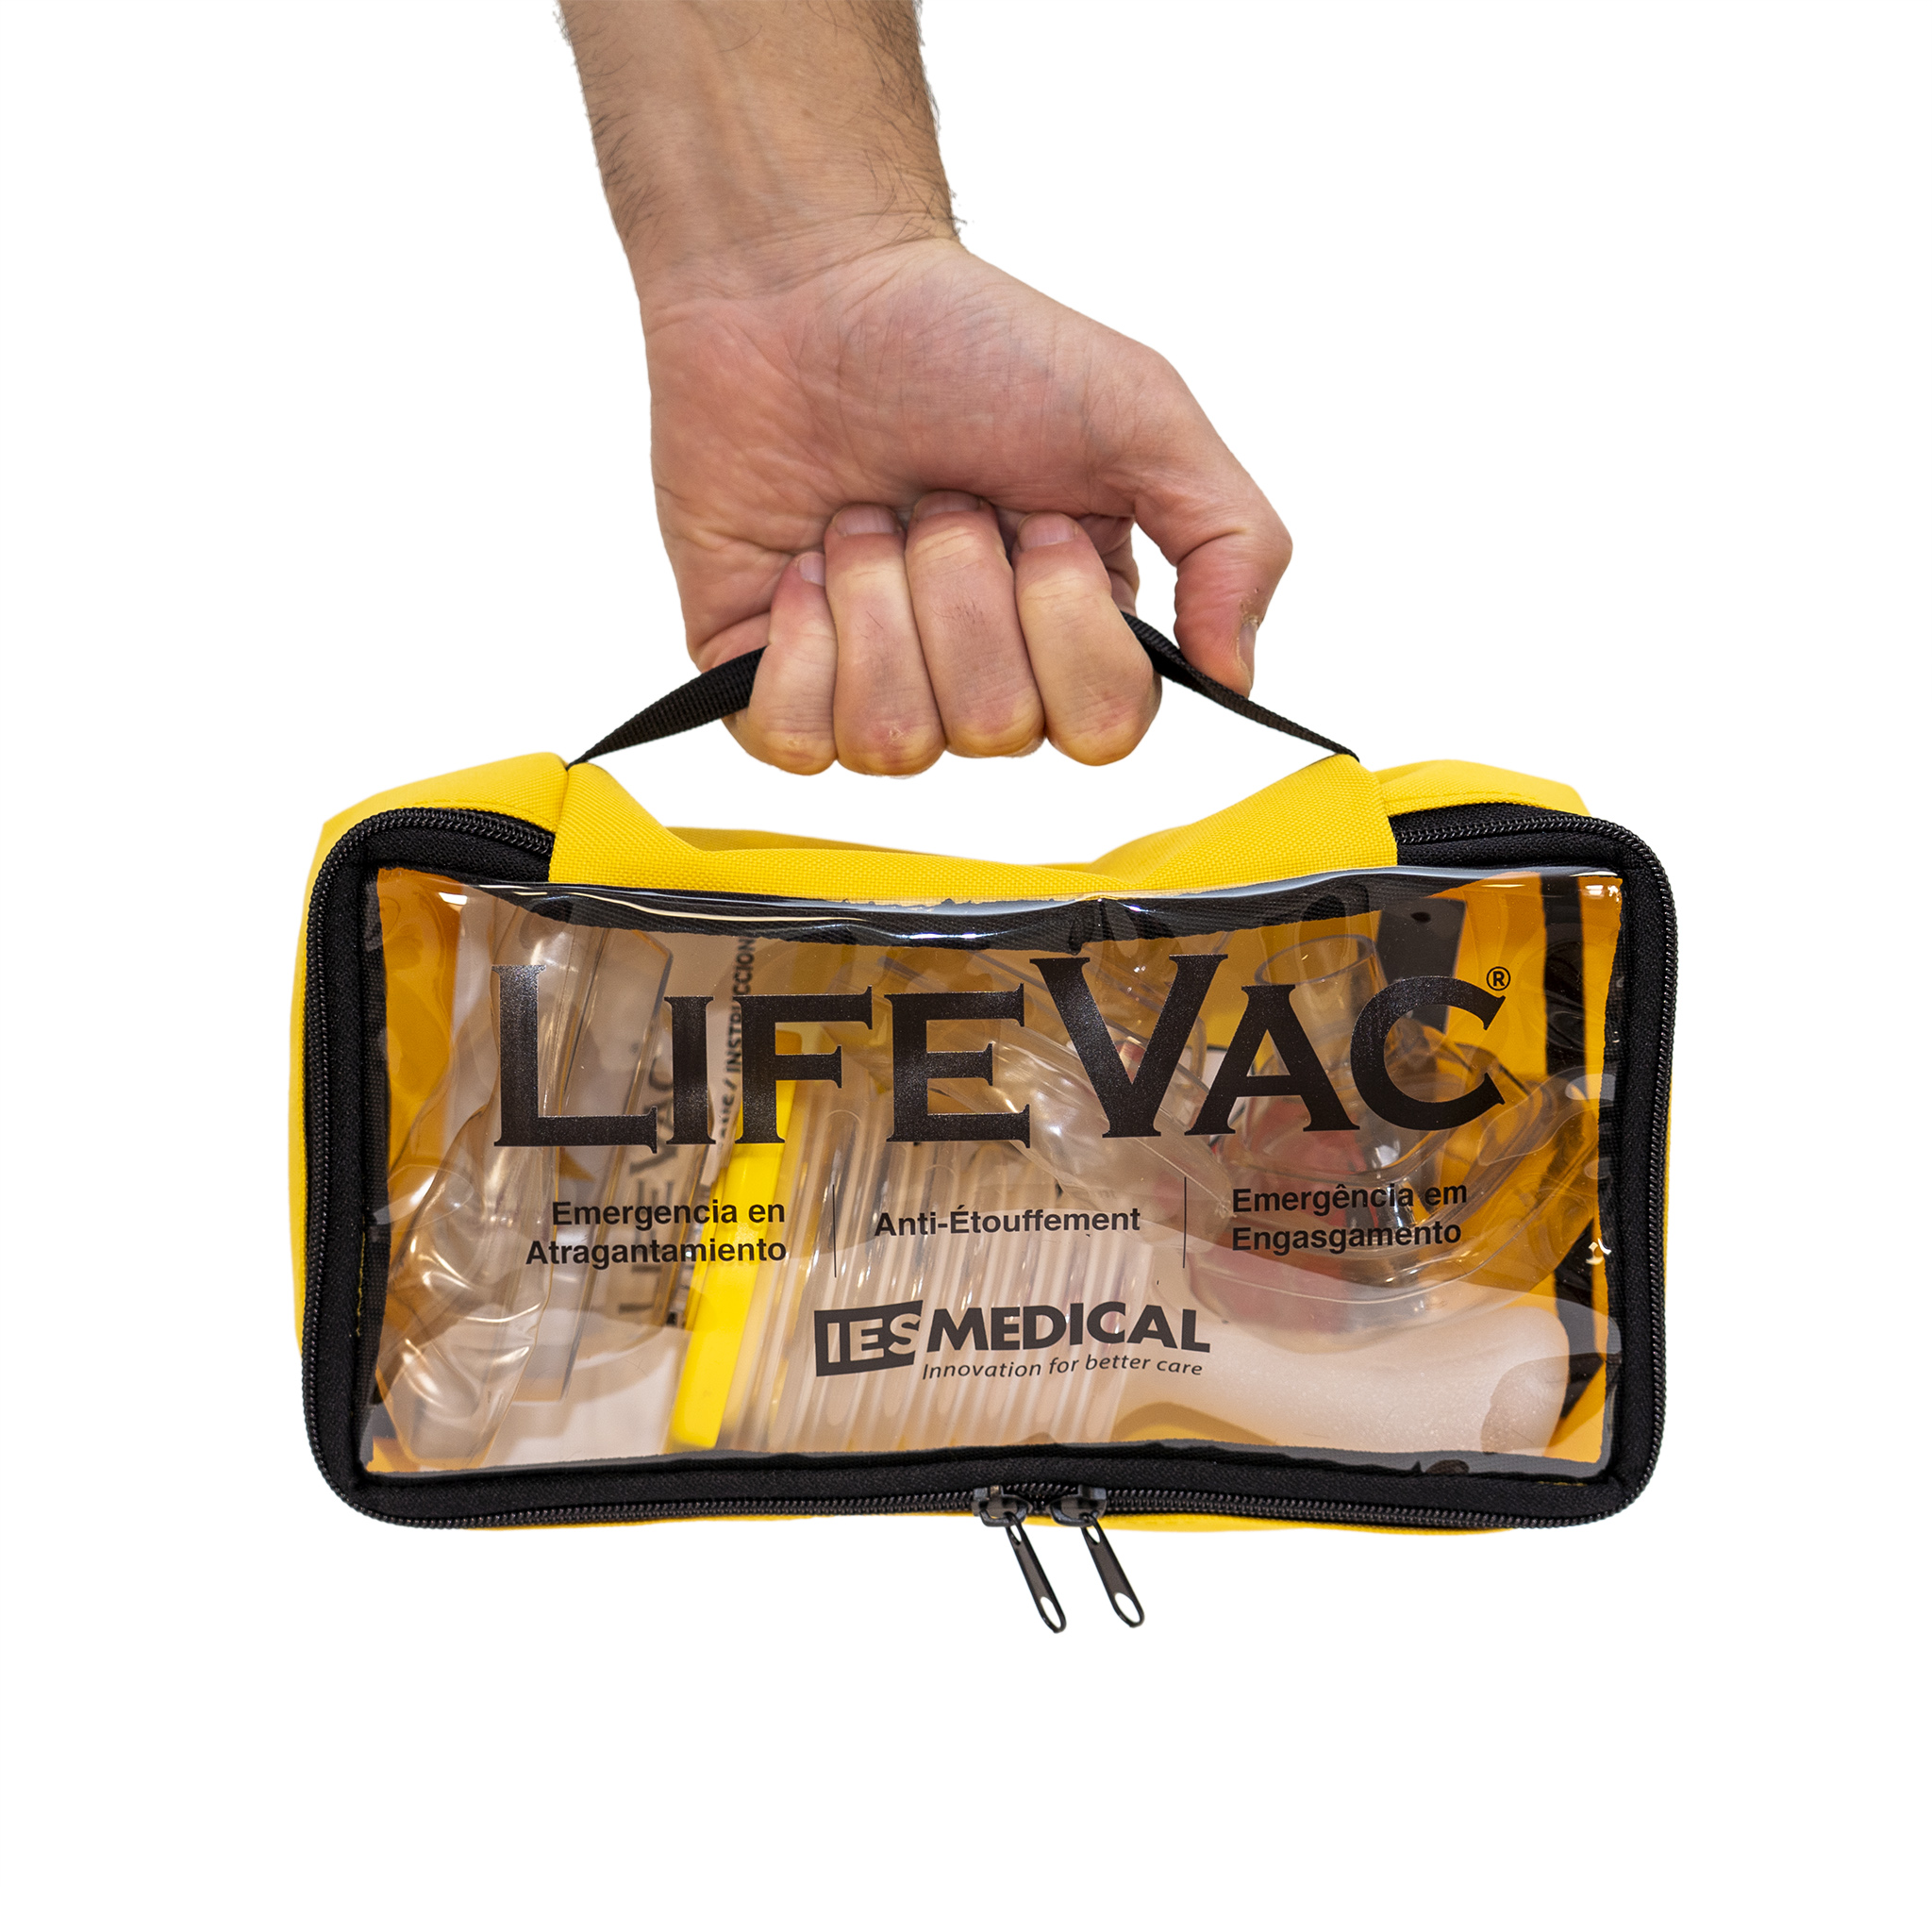 Lifevac - Emergencia en asfixia por atragantamiento - LifeVac